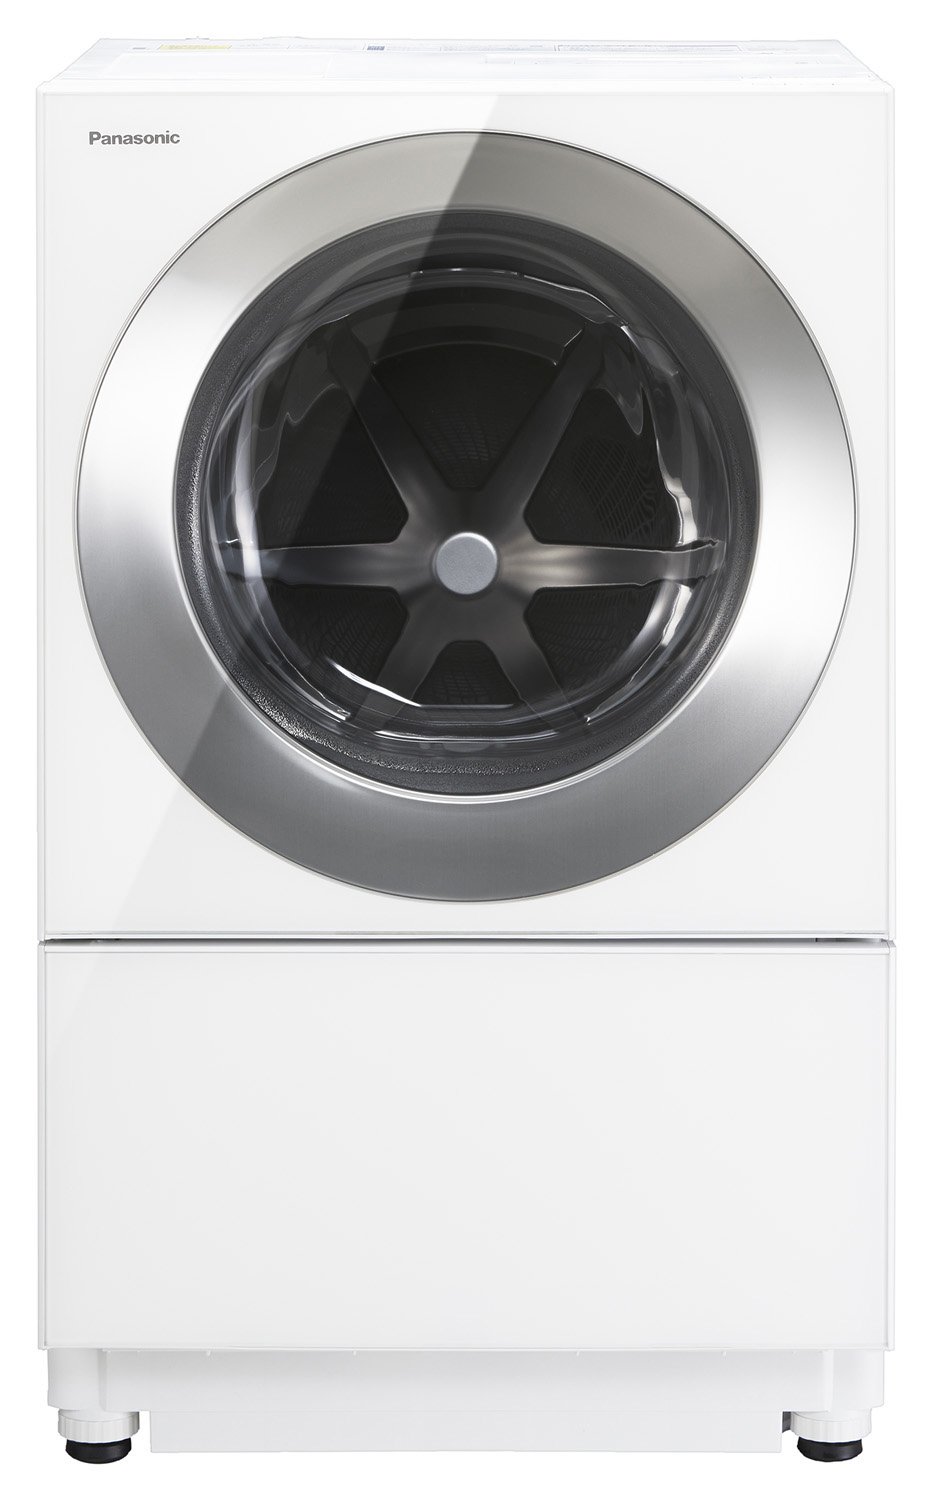 ななめドラム洗濯乾燥機Cuble（キューブル）NA-VG2600L他 2機種を発売 